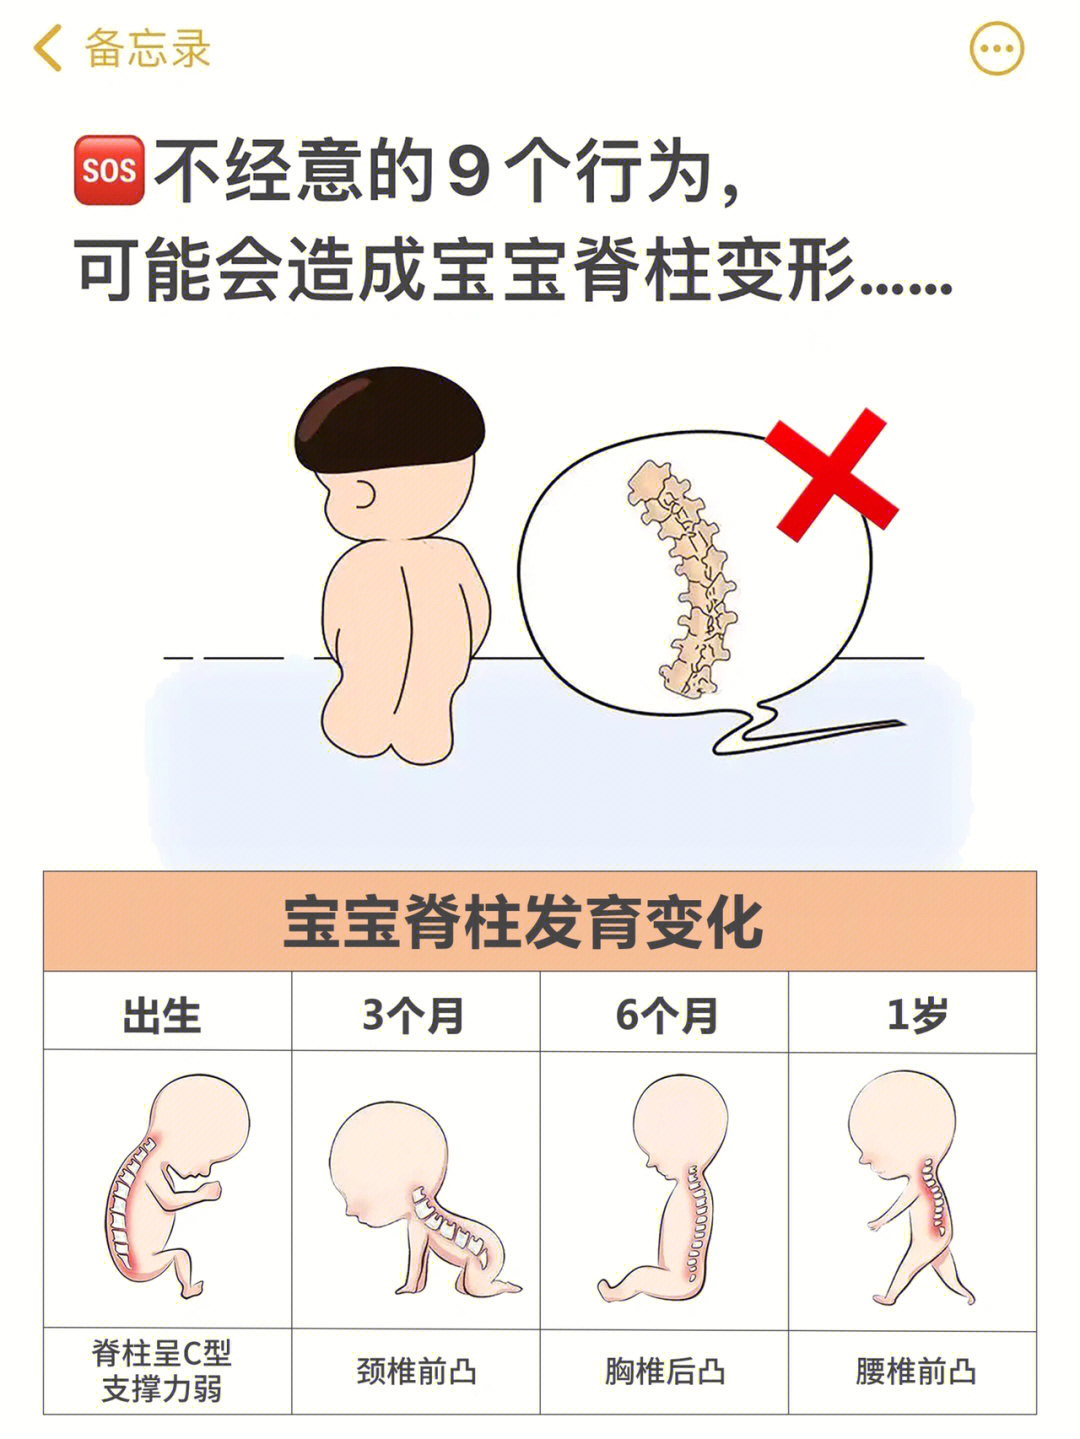 从宝宝出生到一岁,脊柱发育共经历4个阶段7815新生儿:脊柱呈c型